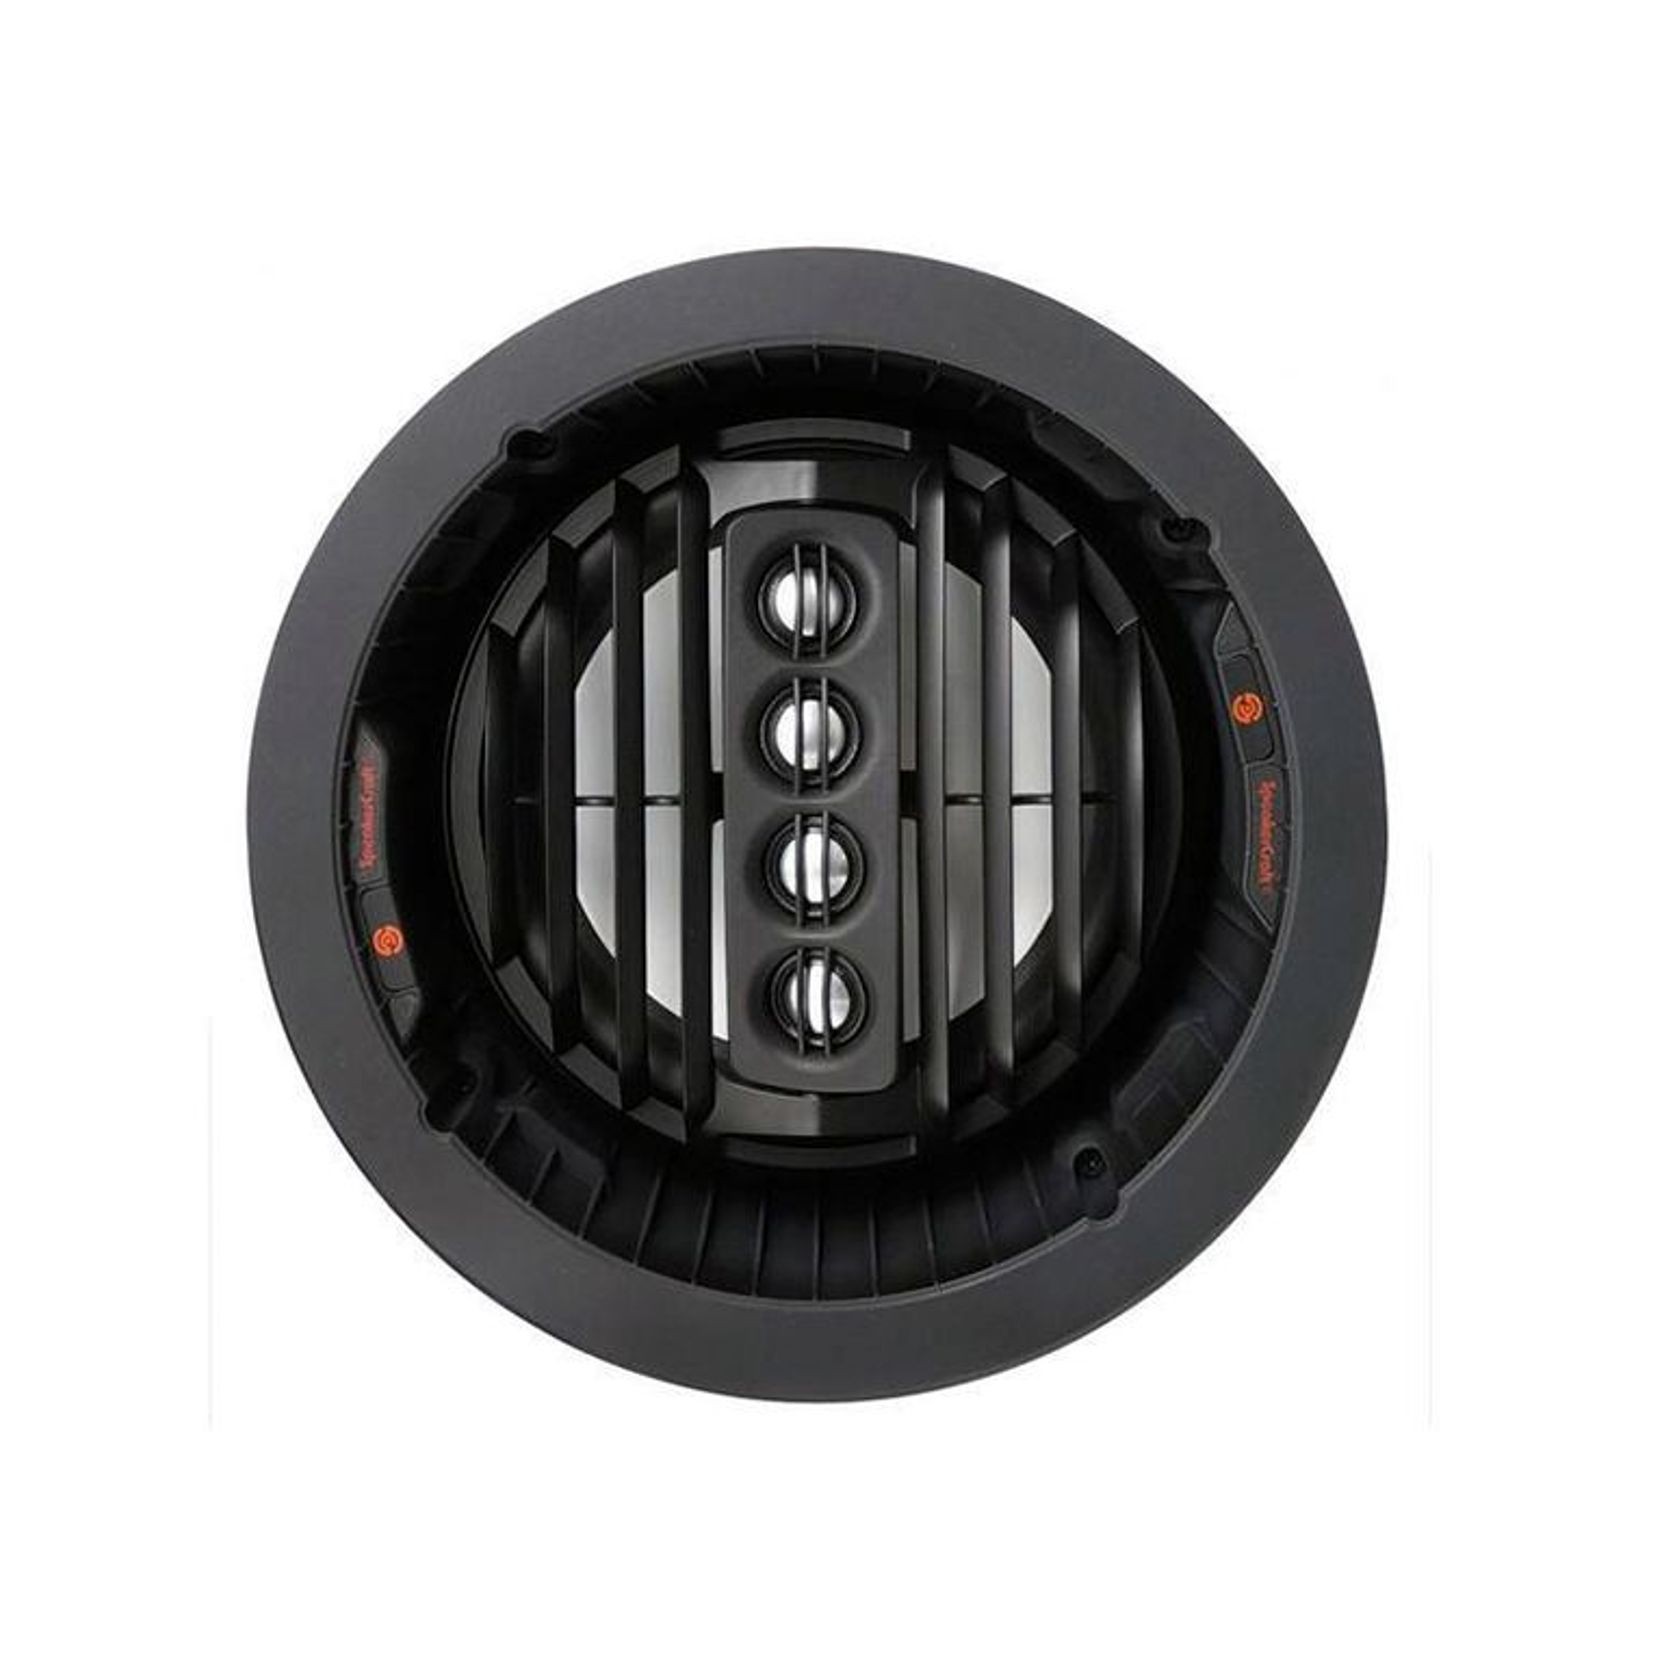 Speakercraft Profile Aim Series 273DT In-Ceiling Speakers gallery detail image